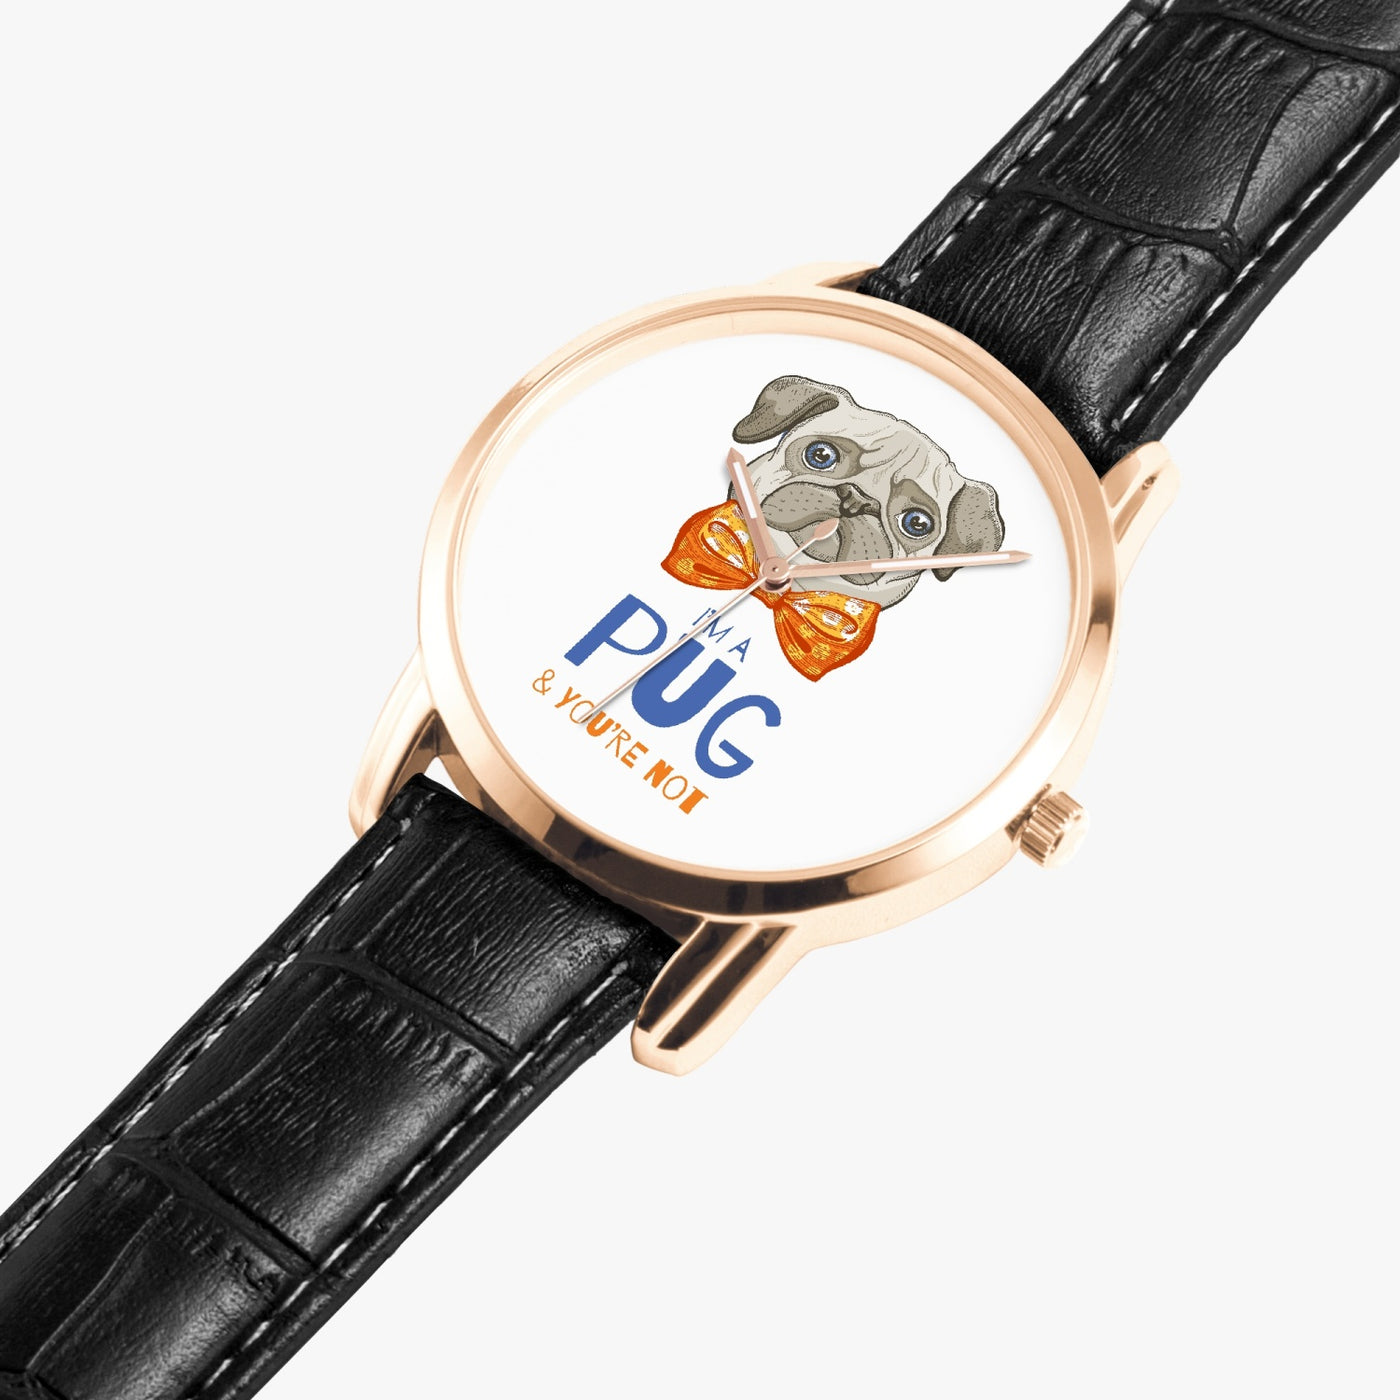 I Am Pug - Instafamous Wide Type Quartz watch